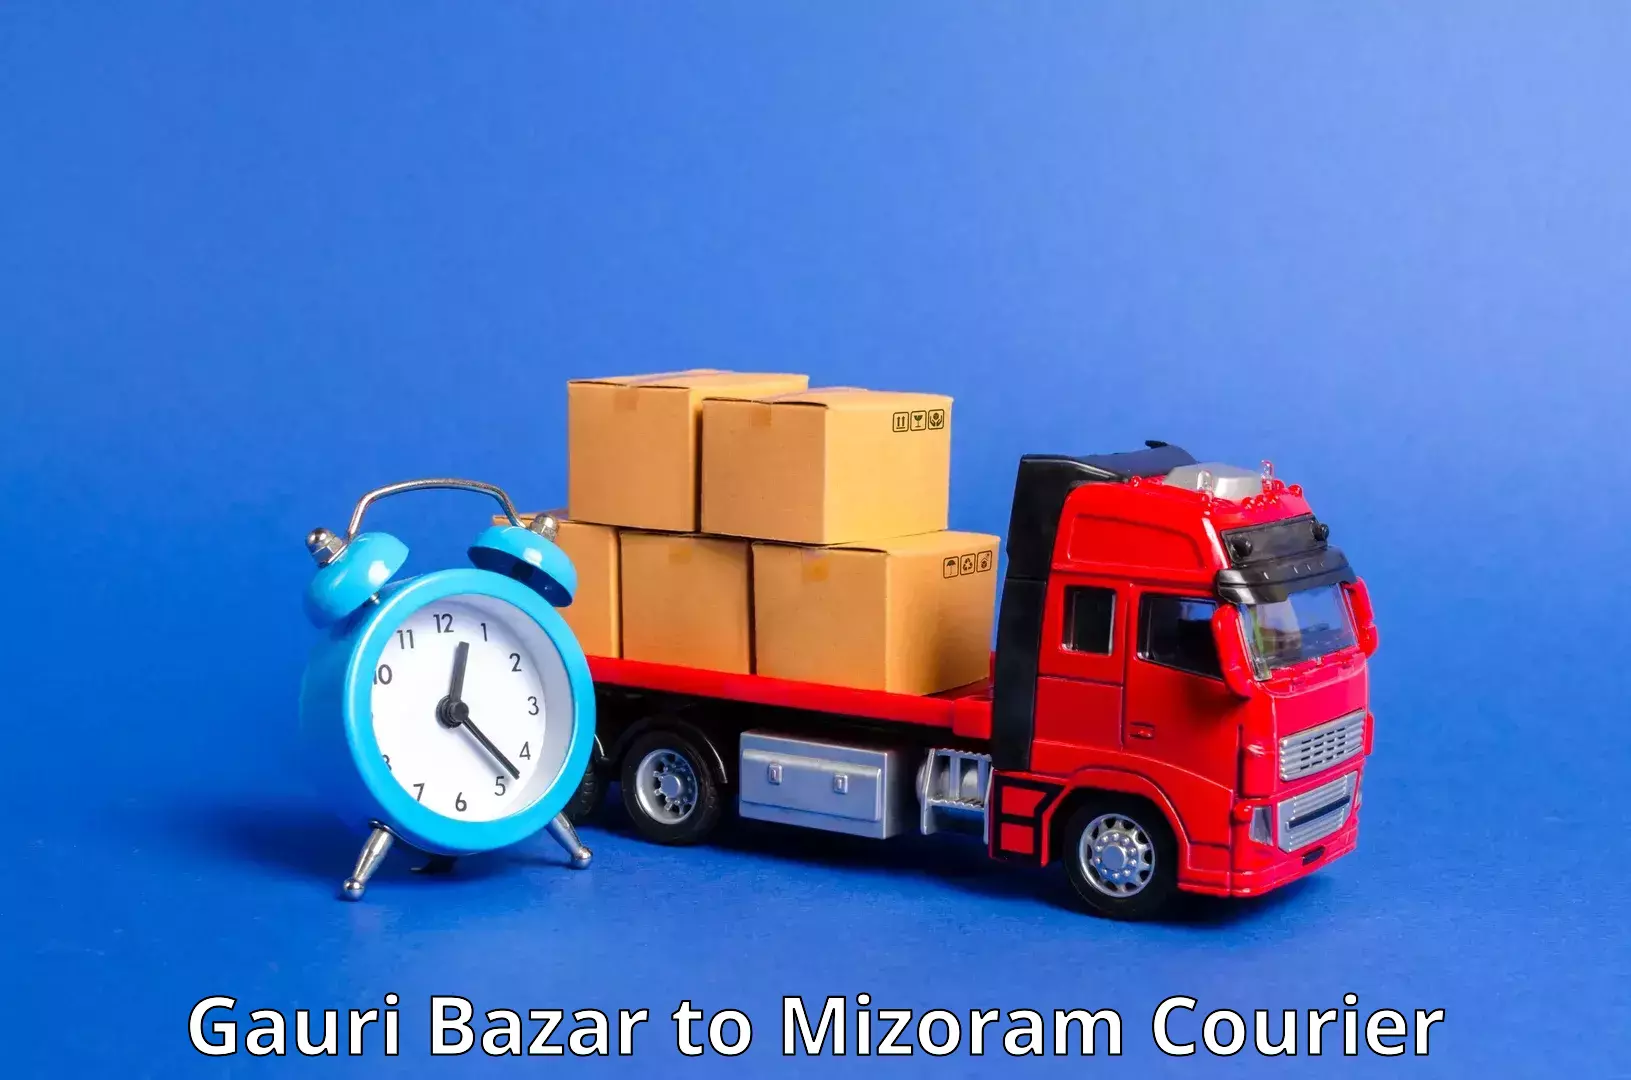 End-to-end delivery Gauri Bazar to Mizoram